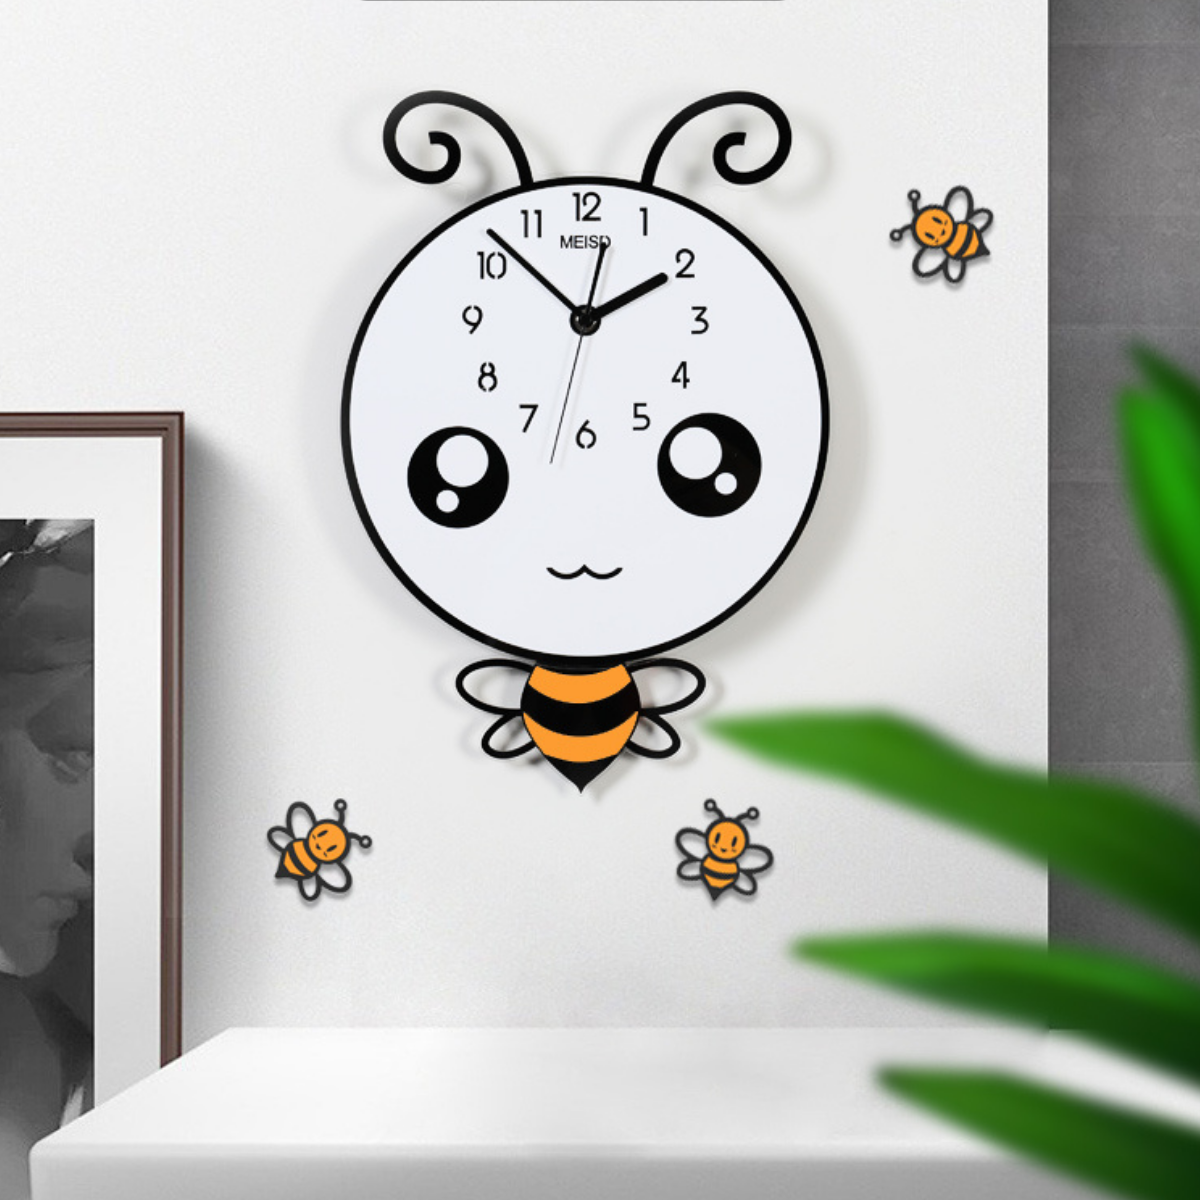 Đồng hồ trang trí hoạt hình dễ thương - KHÔNG CẦN KHOAN TƯỜNG - Tặng kèm 3 con ong nhỏ như hình - 30cm x 43cm